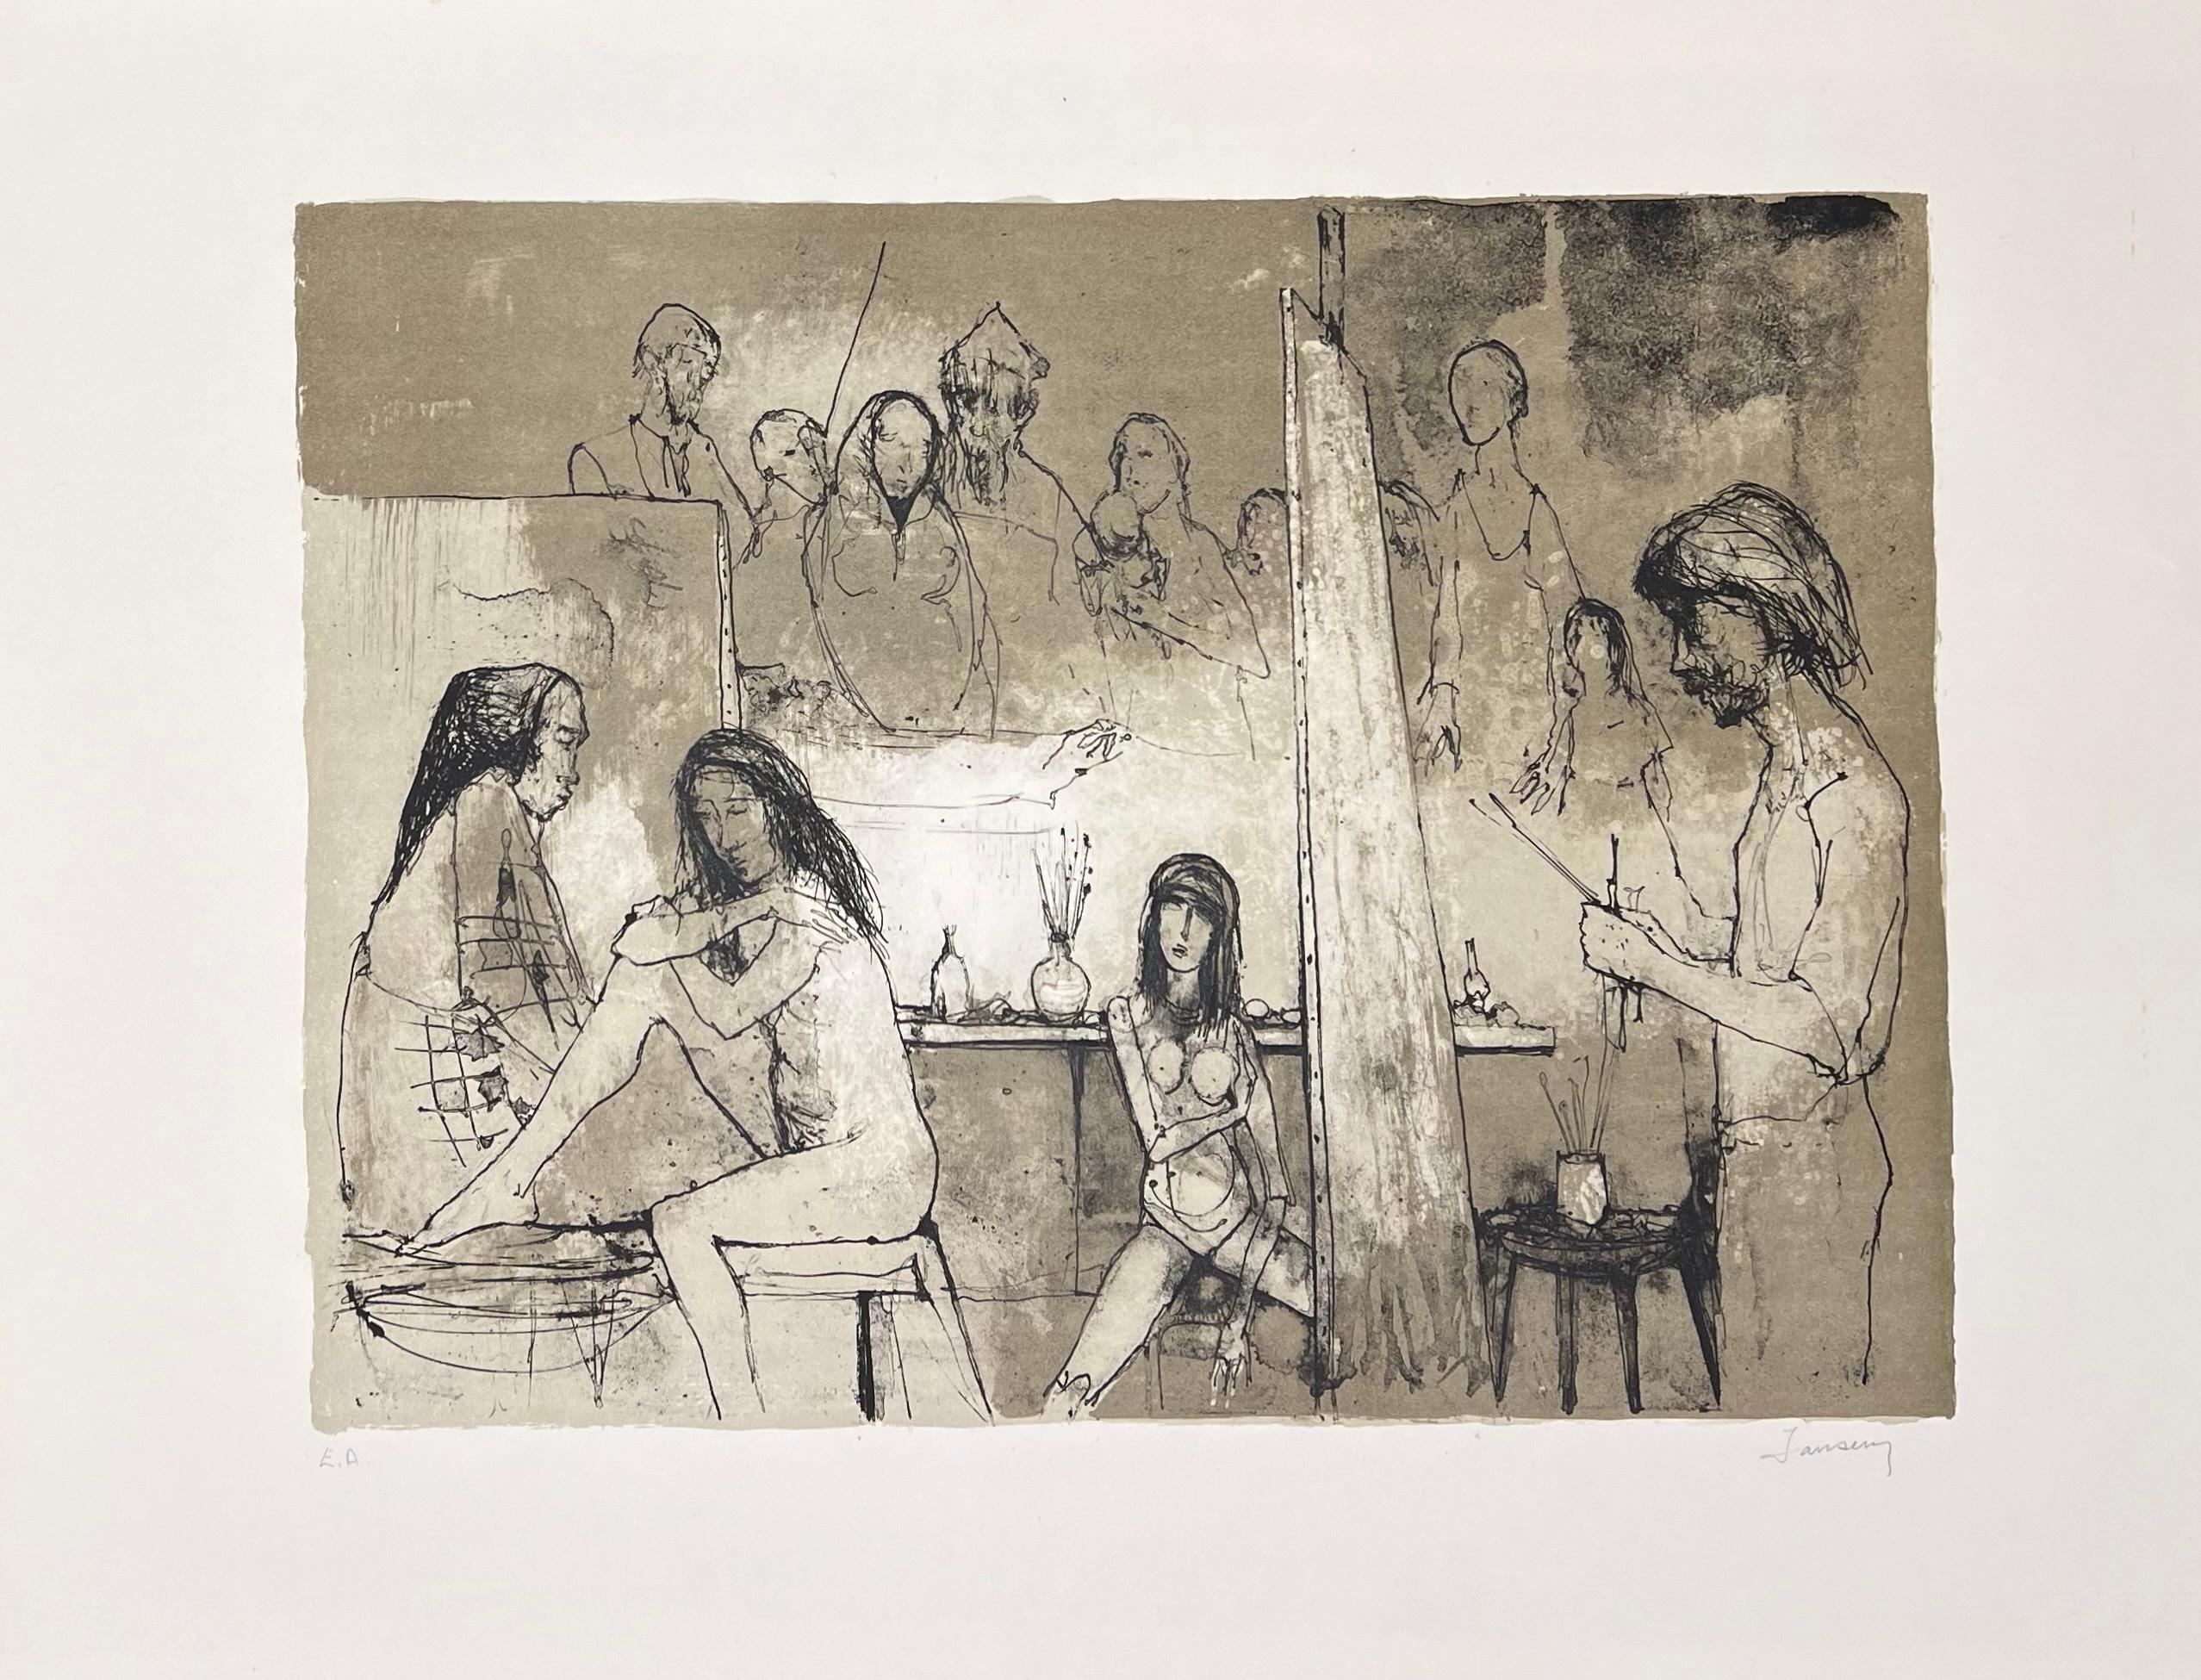 Jean Jansem (1920-2013) 
Peintre dans son atelier, 1969
Lithographie sur papier Rives
Signée en bas à droite et justifiée en bas à gauche 
39 x 52 cm / 56 x 76 cm

D'une édition à 120 exemplaires 

Bibliographie:
Jansem Lithographe, 1954-1983, de